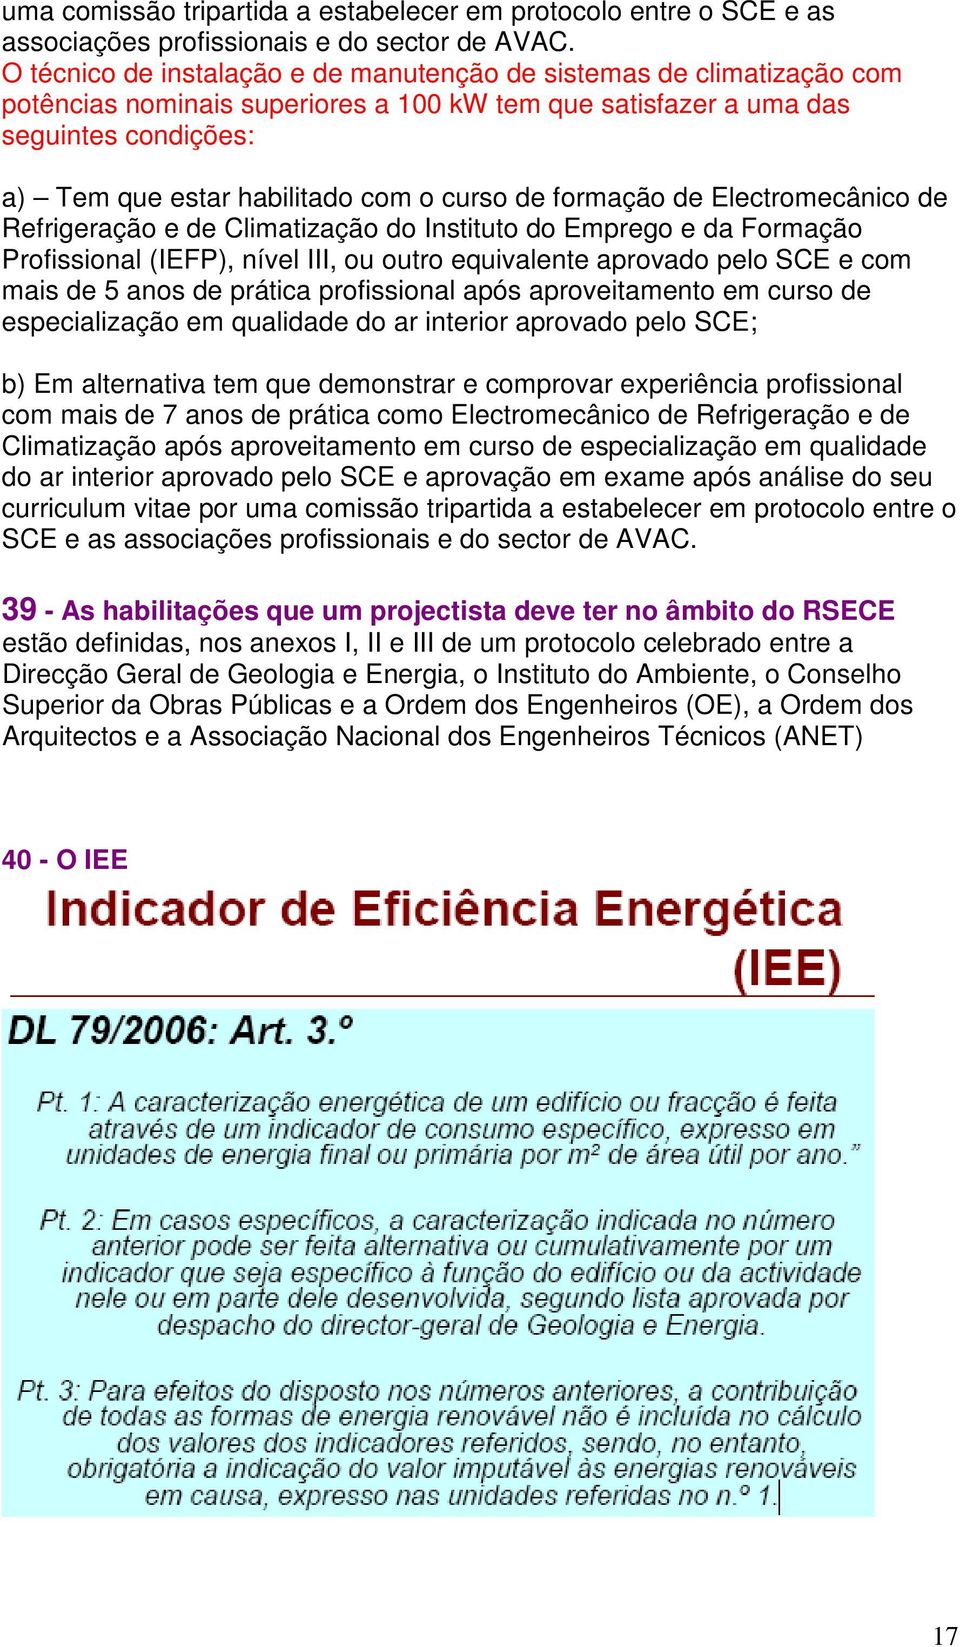 curso de formação de Electromecânico de Refrigeração e de Climatização do Instituto do Emprego e da Formação Profissional (IEFP), nível III, ou outro equivalente aprovado pelo SCE e com mais de 5